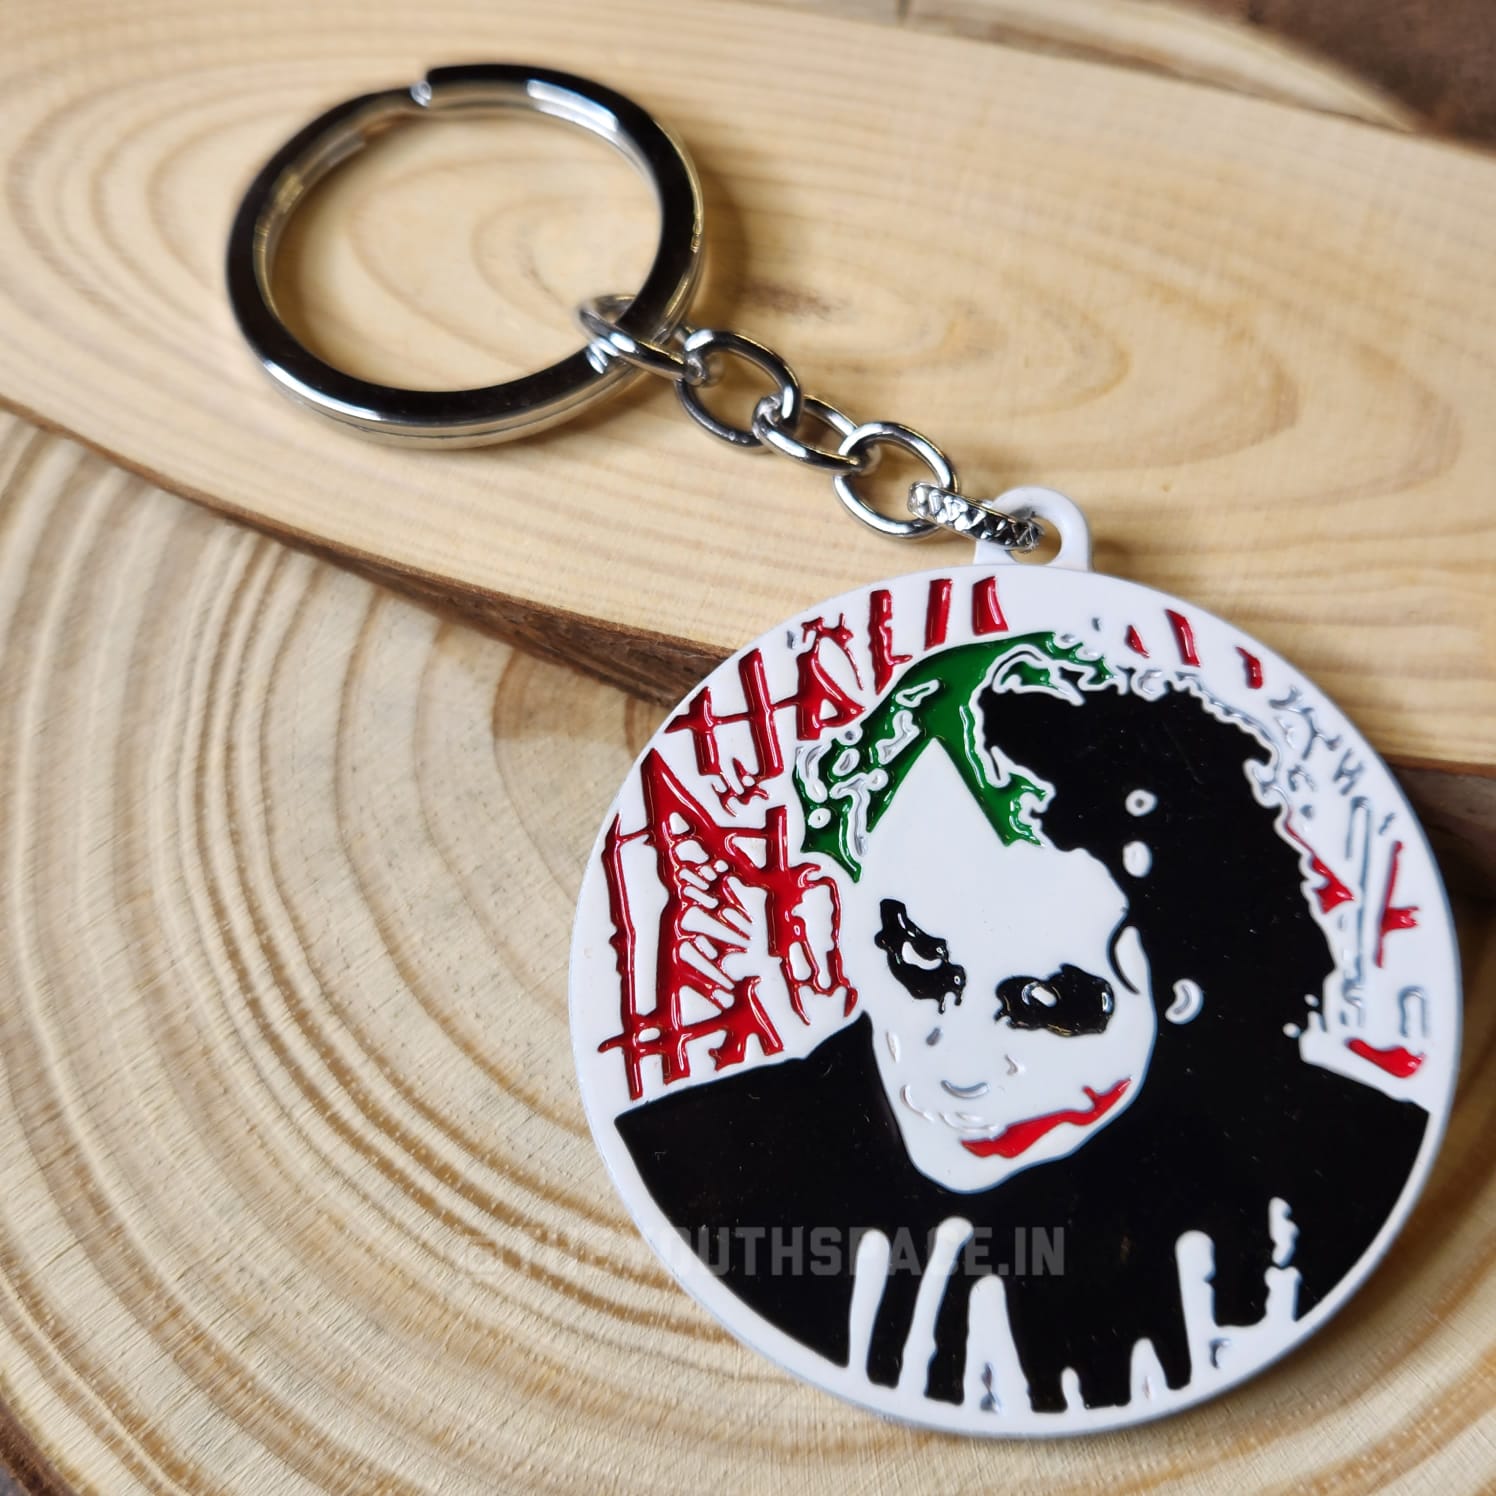 Joker metal keychain